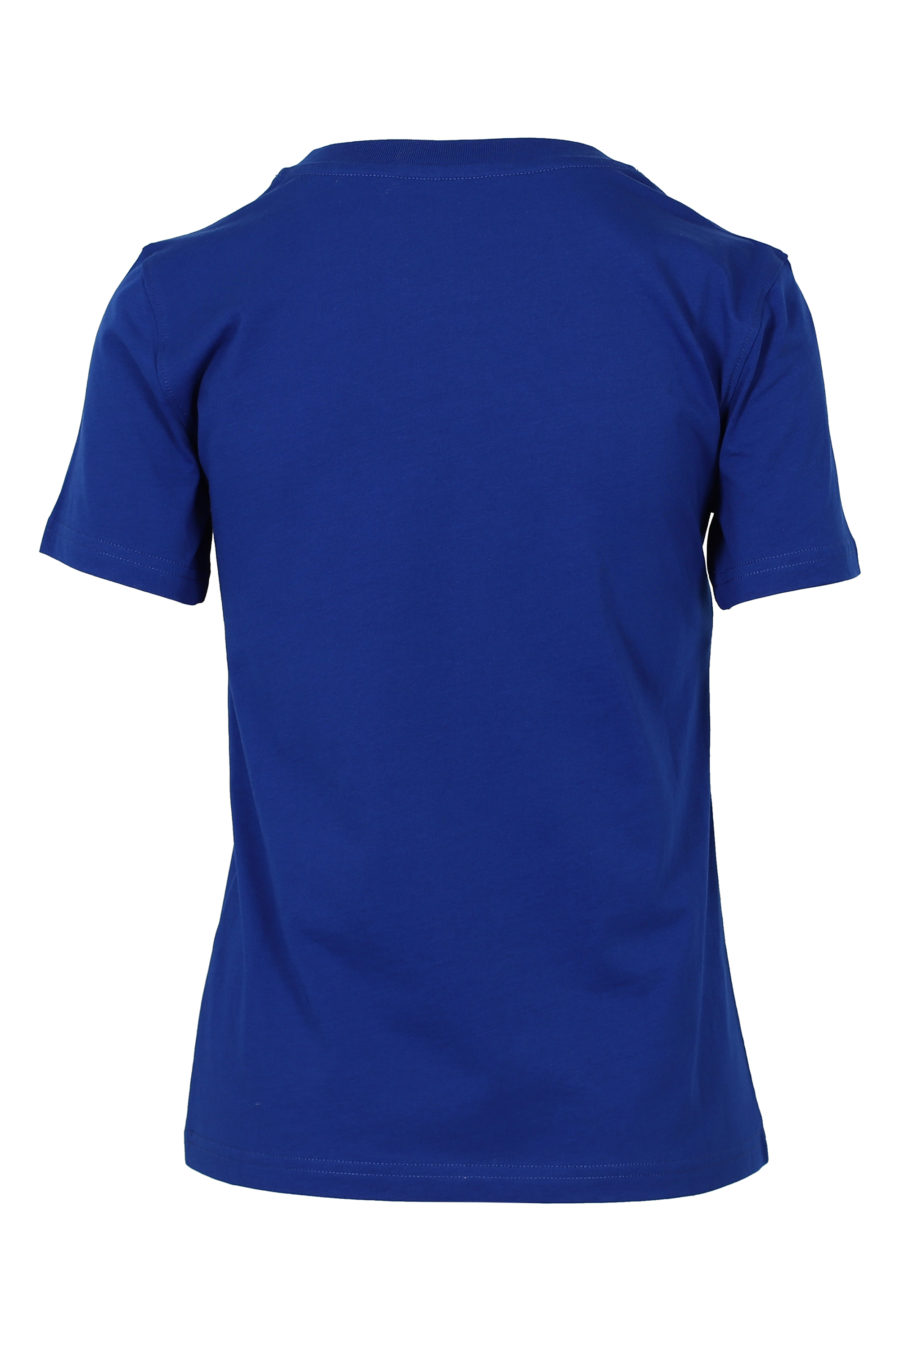 Camiseta azul de manga corta "Couture" - IMG 3143